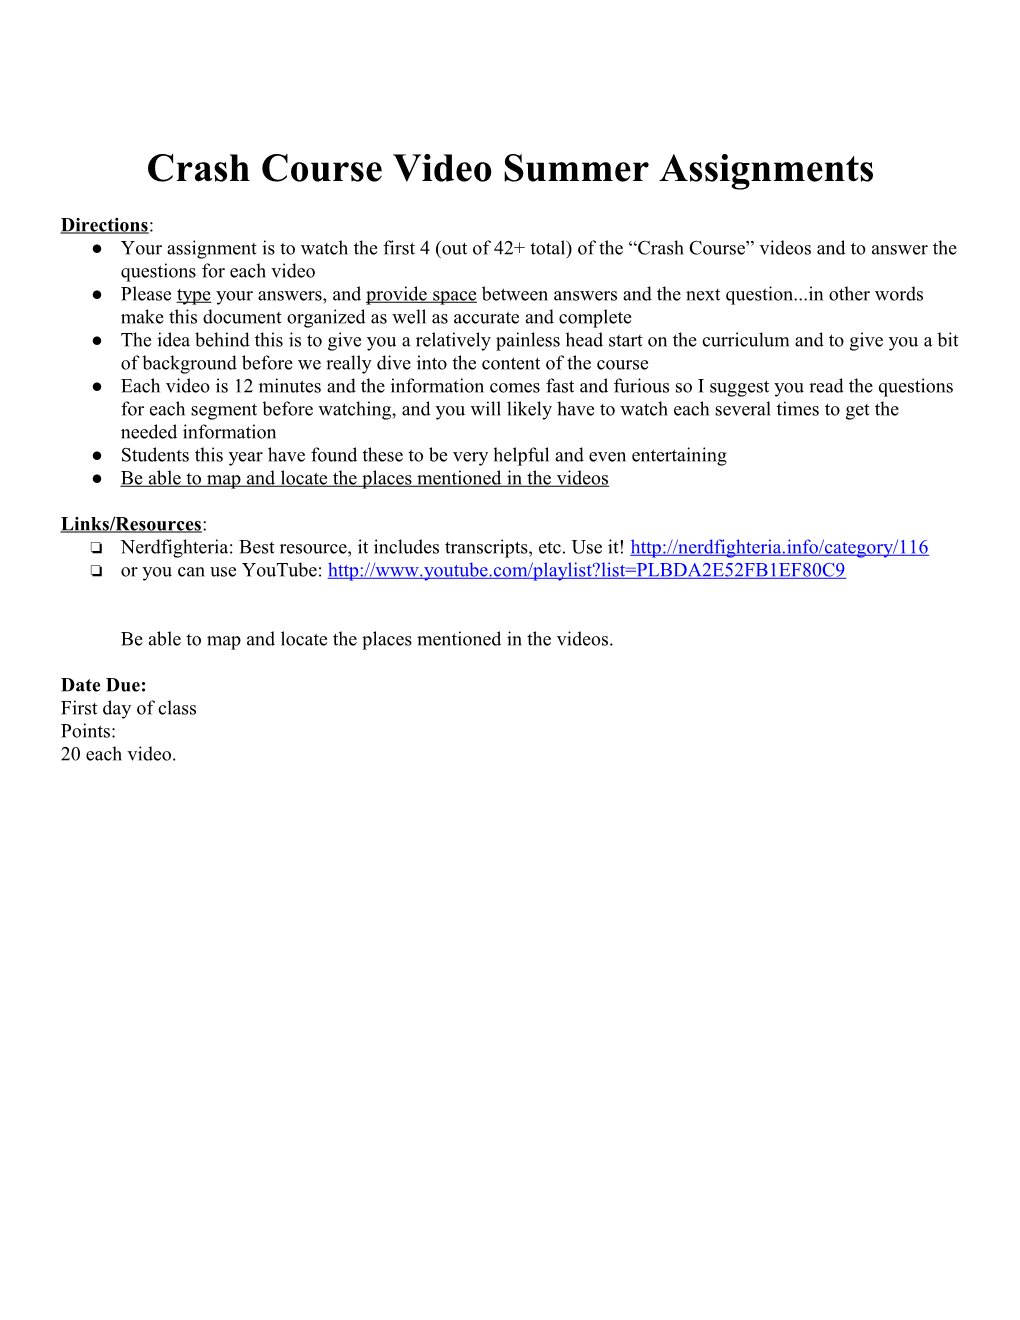 AP World Crash Course Videos Summer Assignment